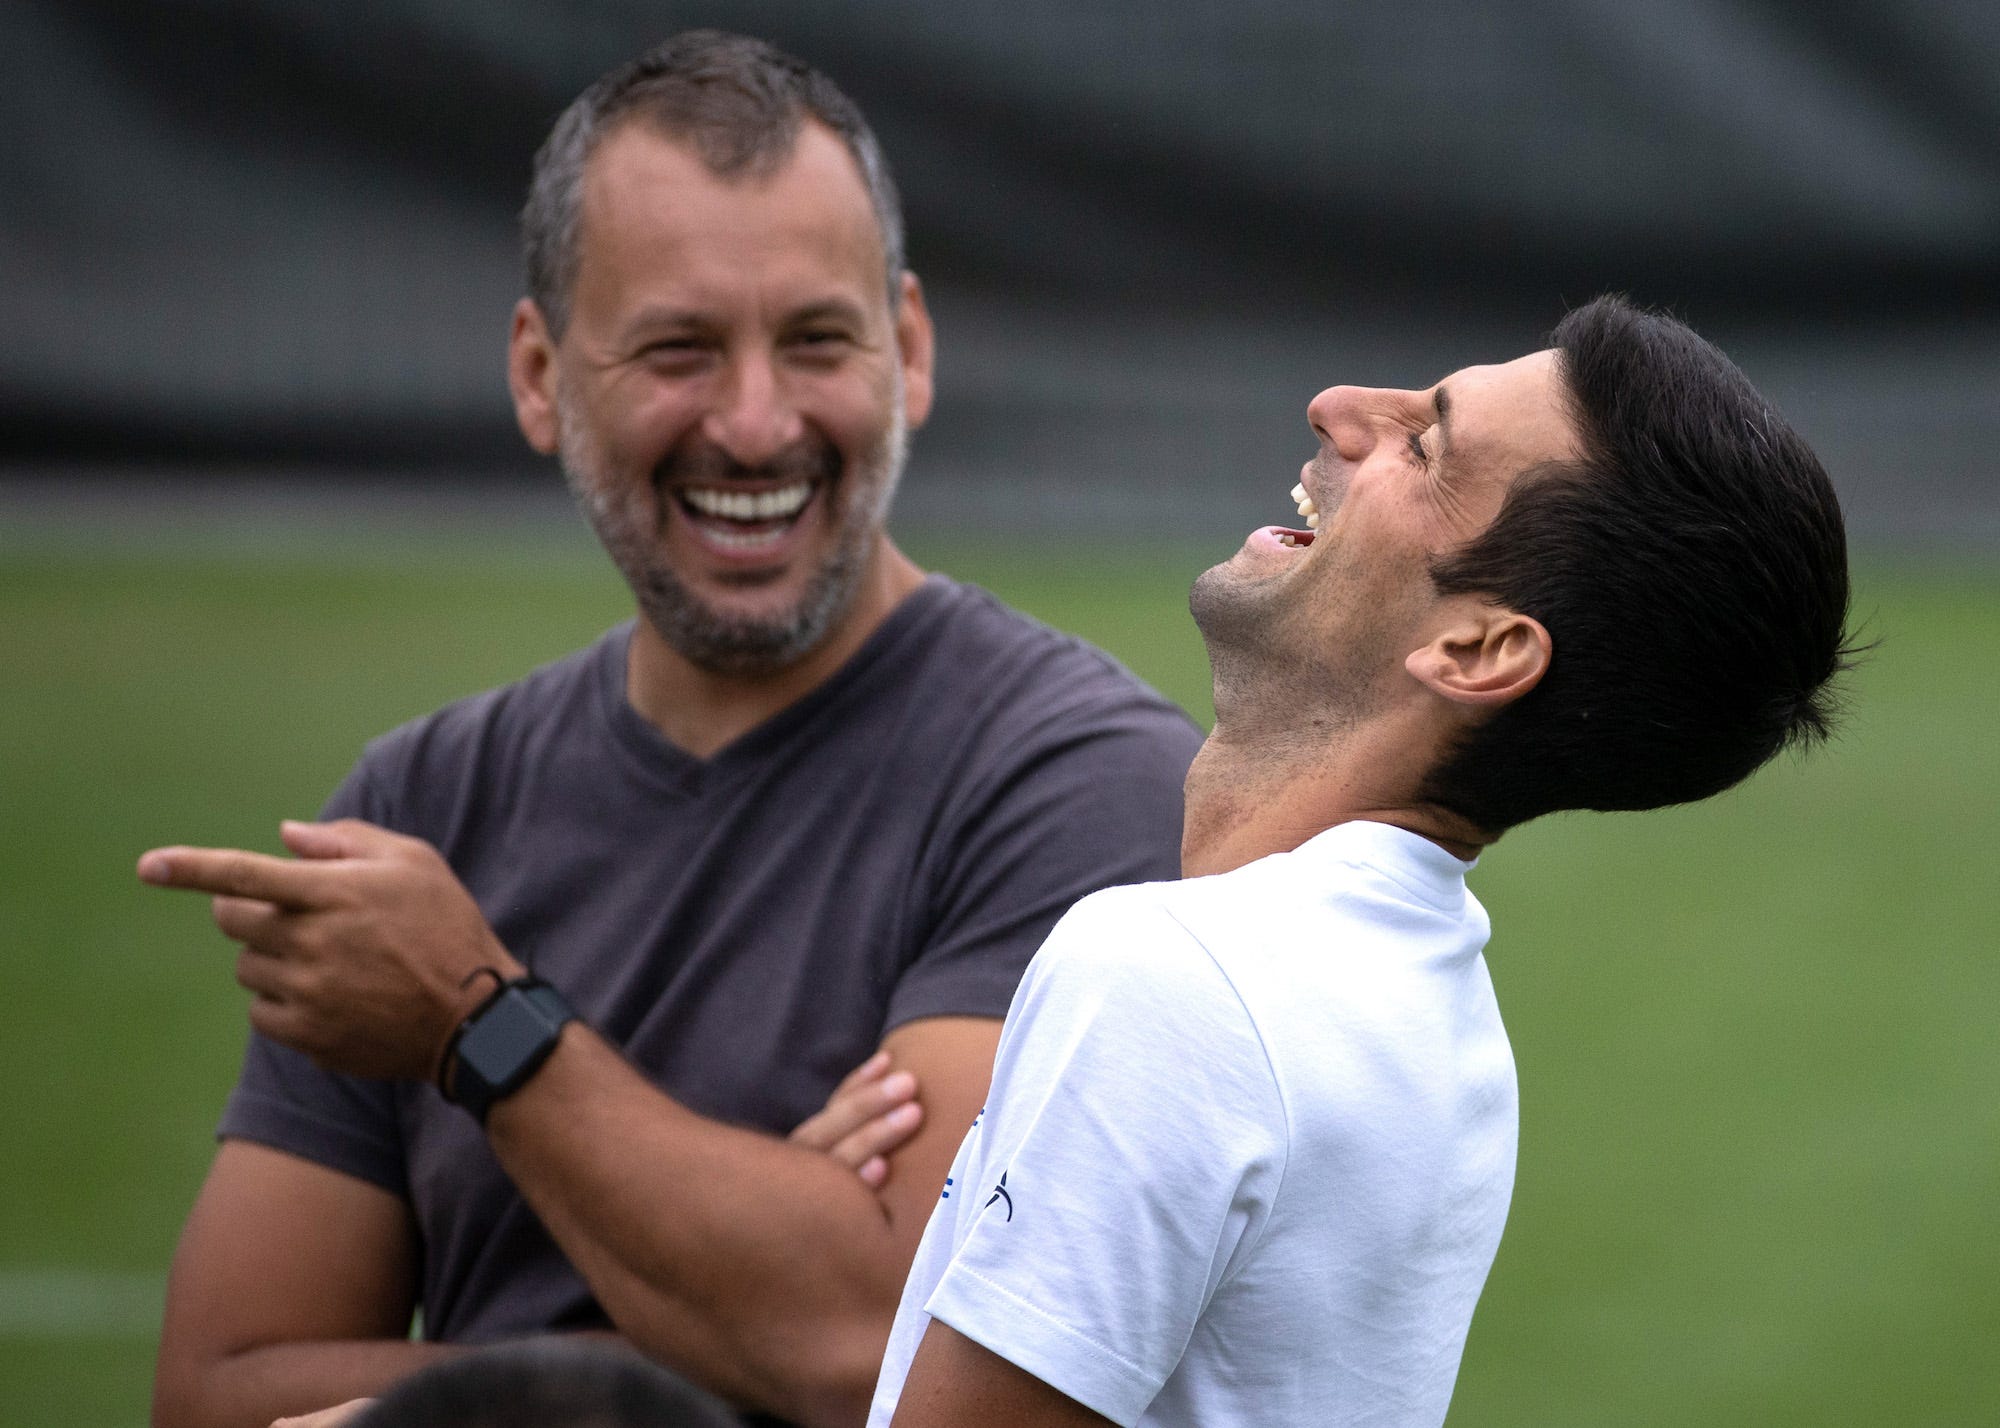 Der Serbe Novak Djokovic lacht während einer Trainingseinheit mit einem Mitglied des Trainerteams